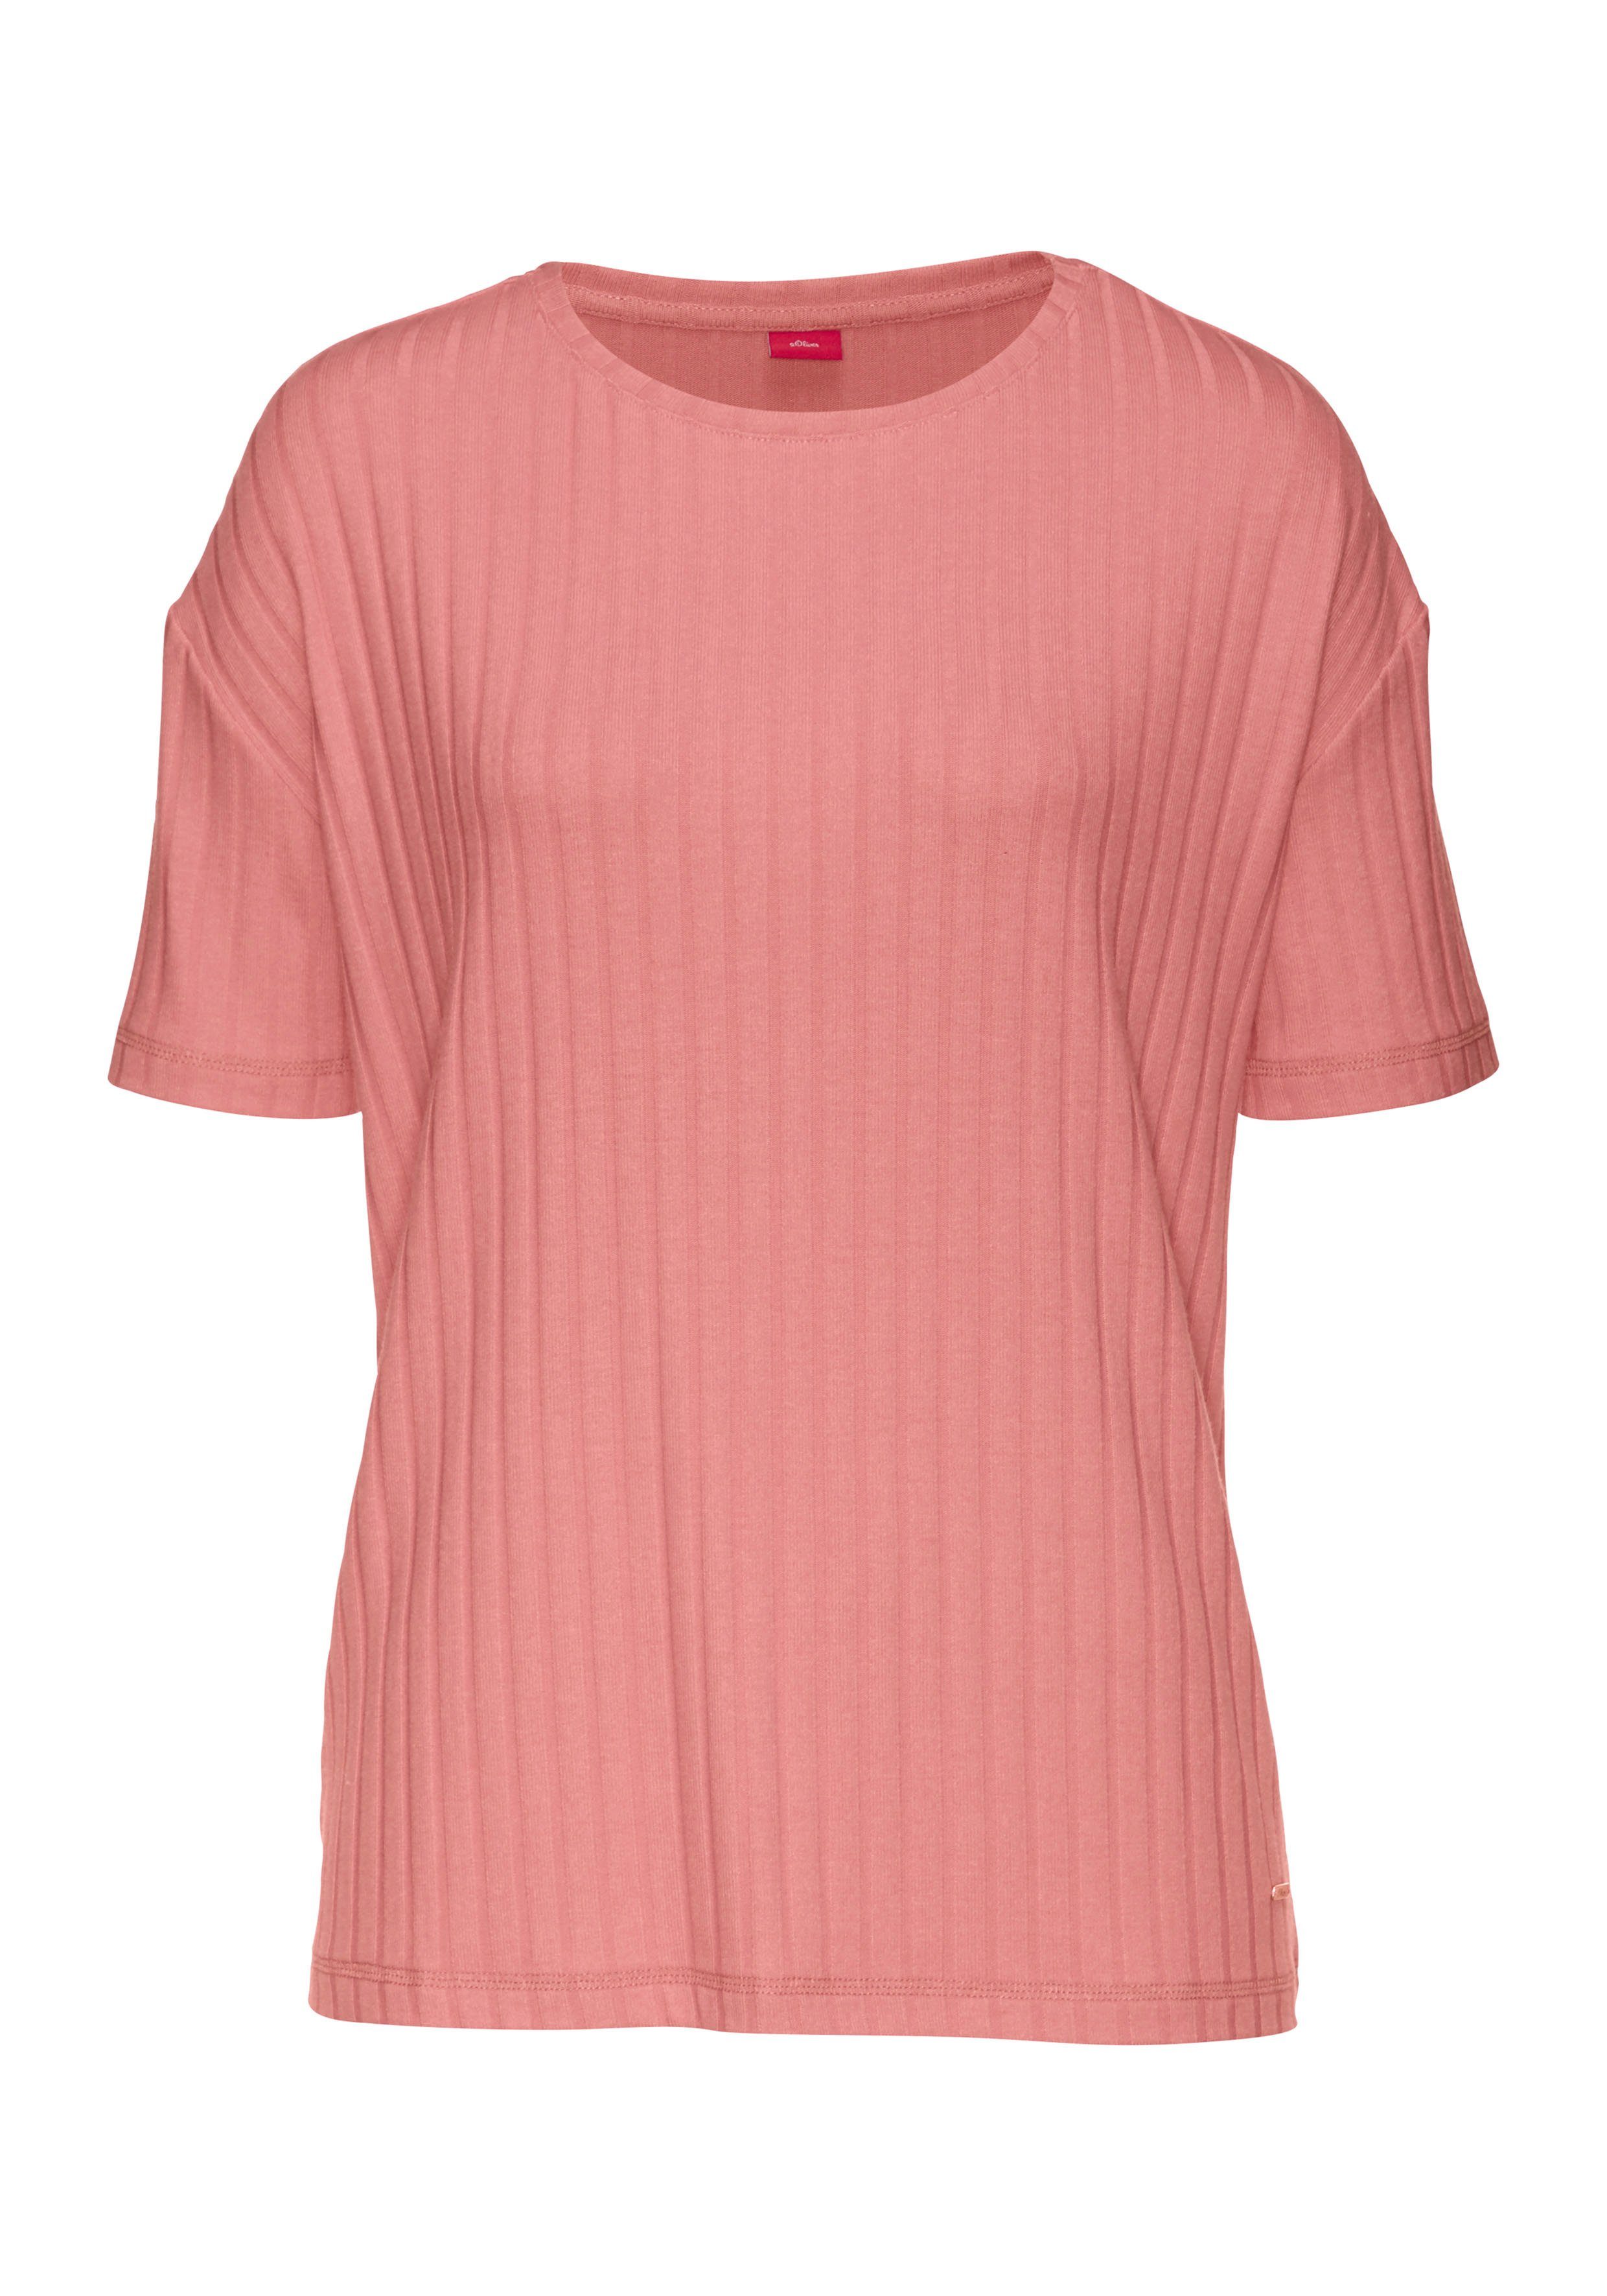 T-Shirt pink s.Oliver